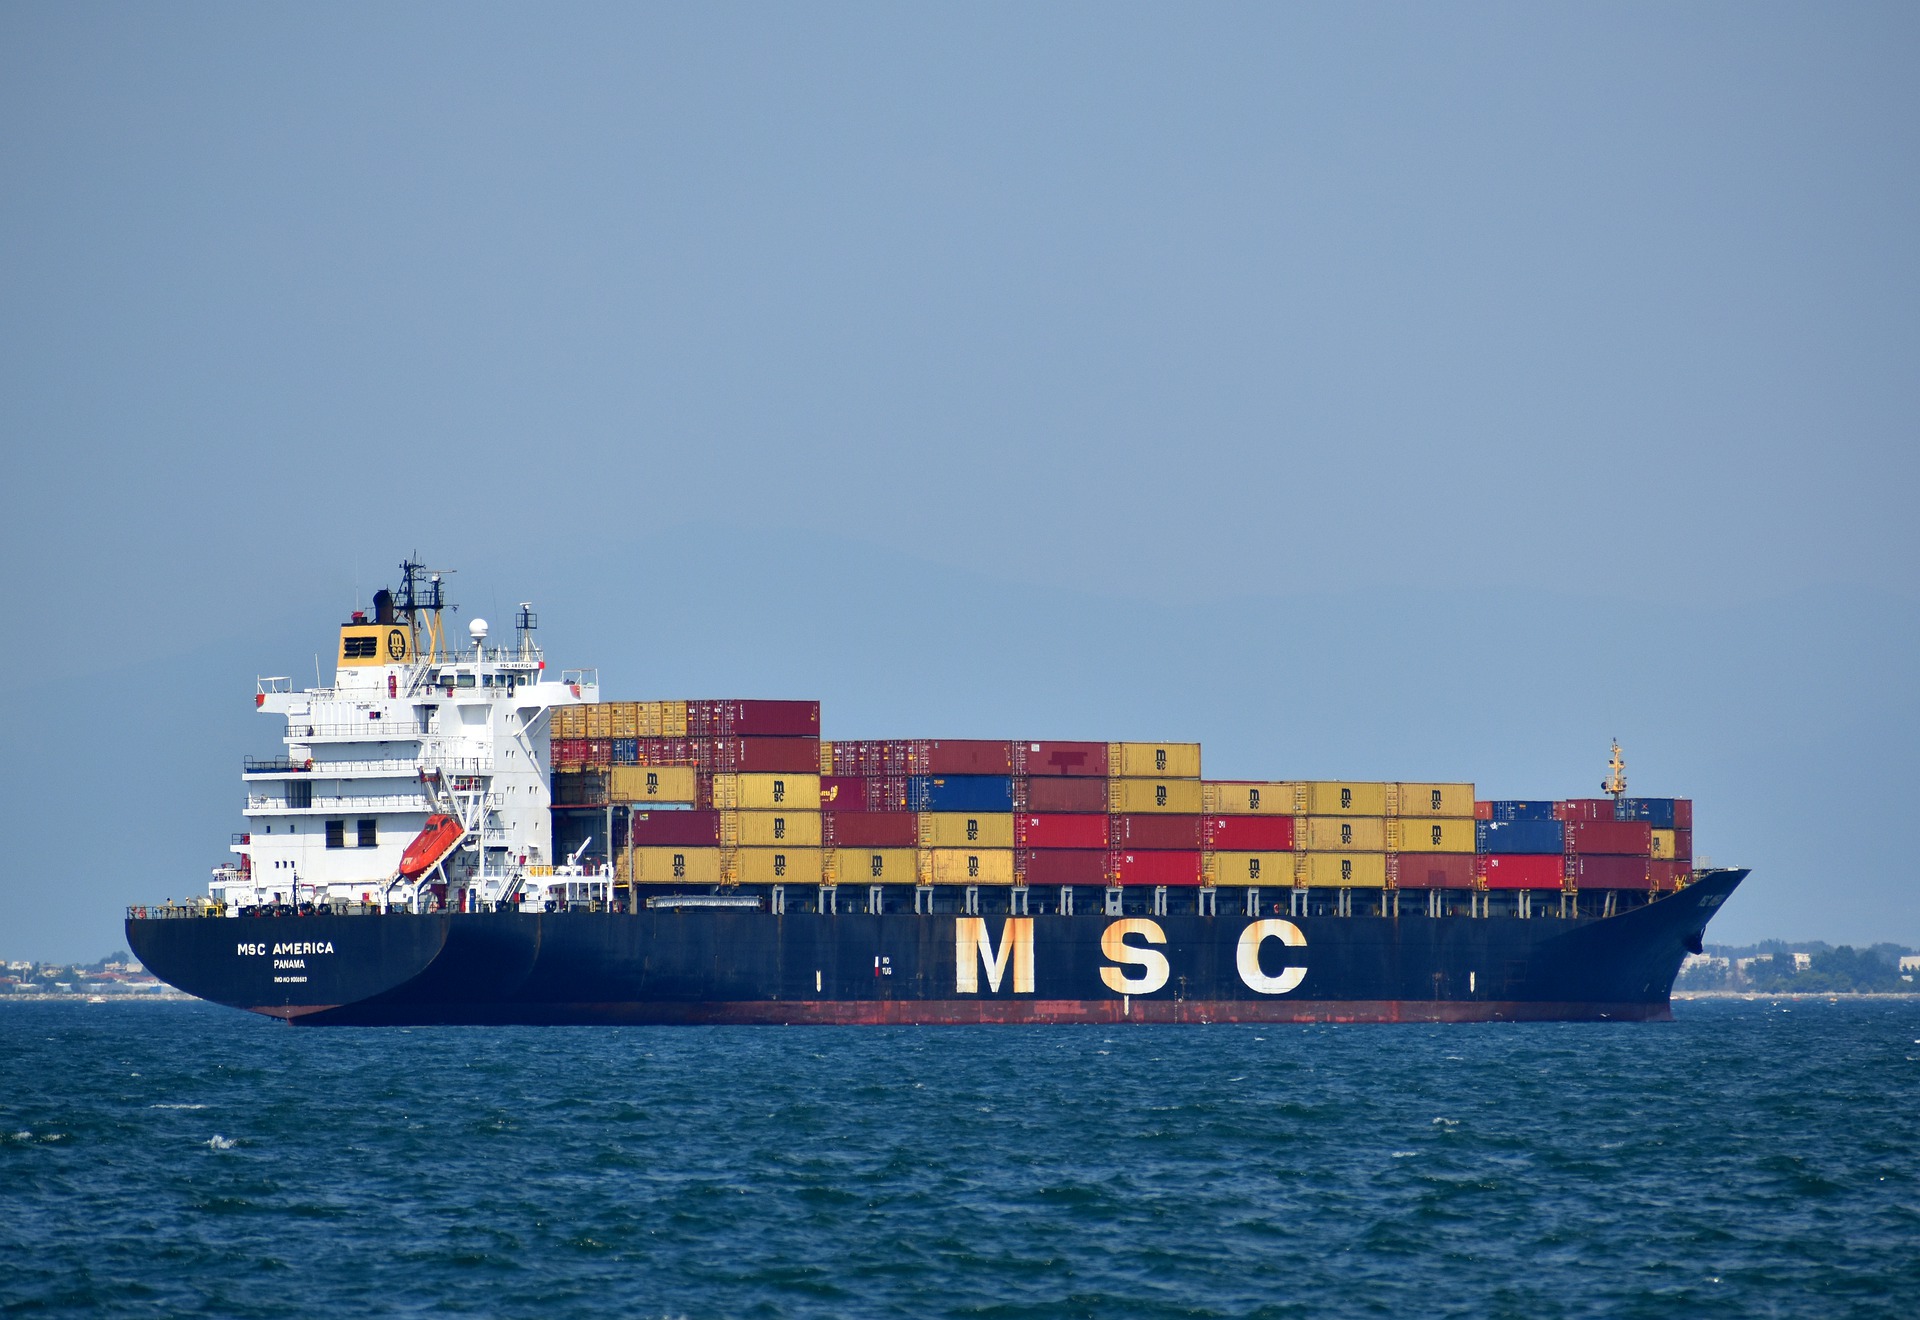 90 % des Welthandels wird über den Seeweg abgewickelt. Doch Containerschiffe wie dieses sind meist mit toxischem Schweröl betankt. 